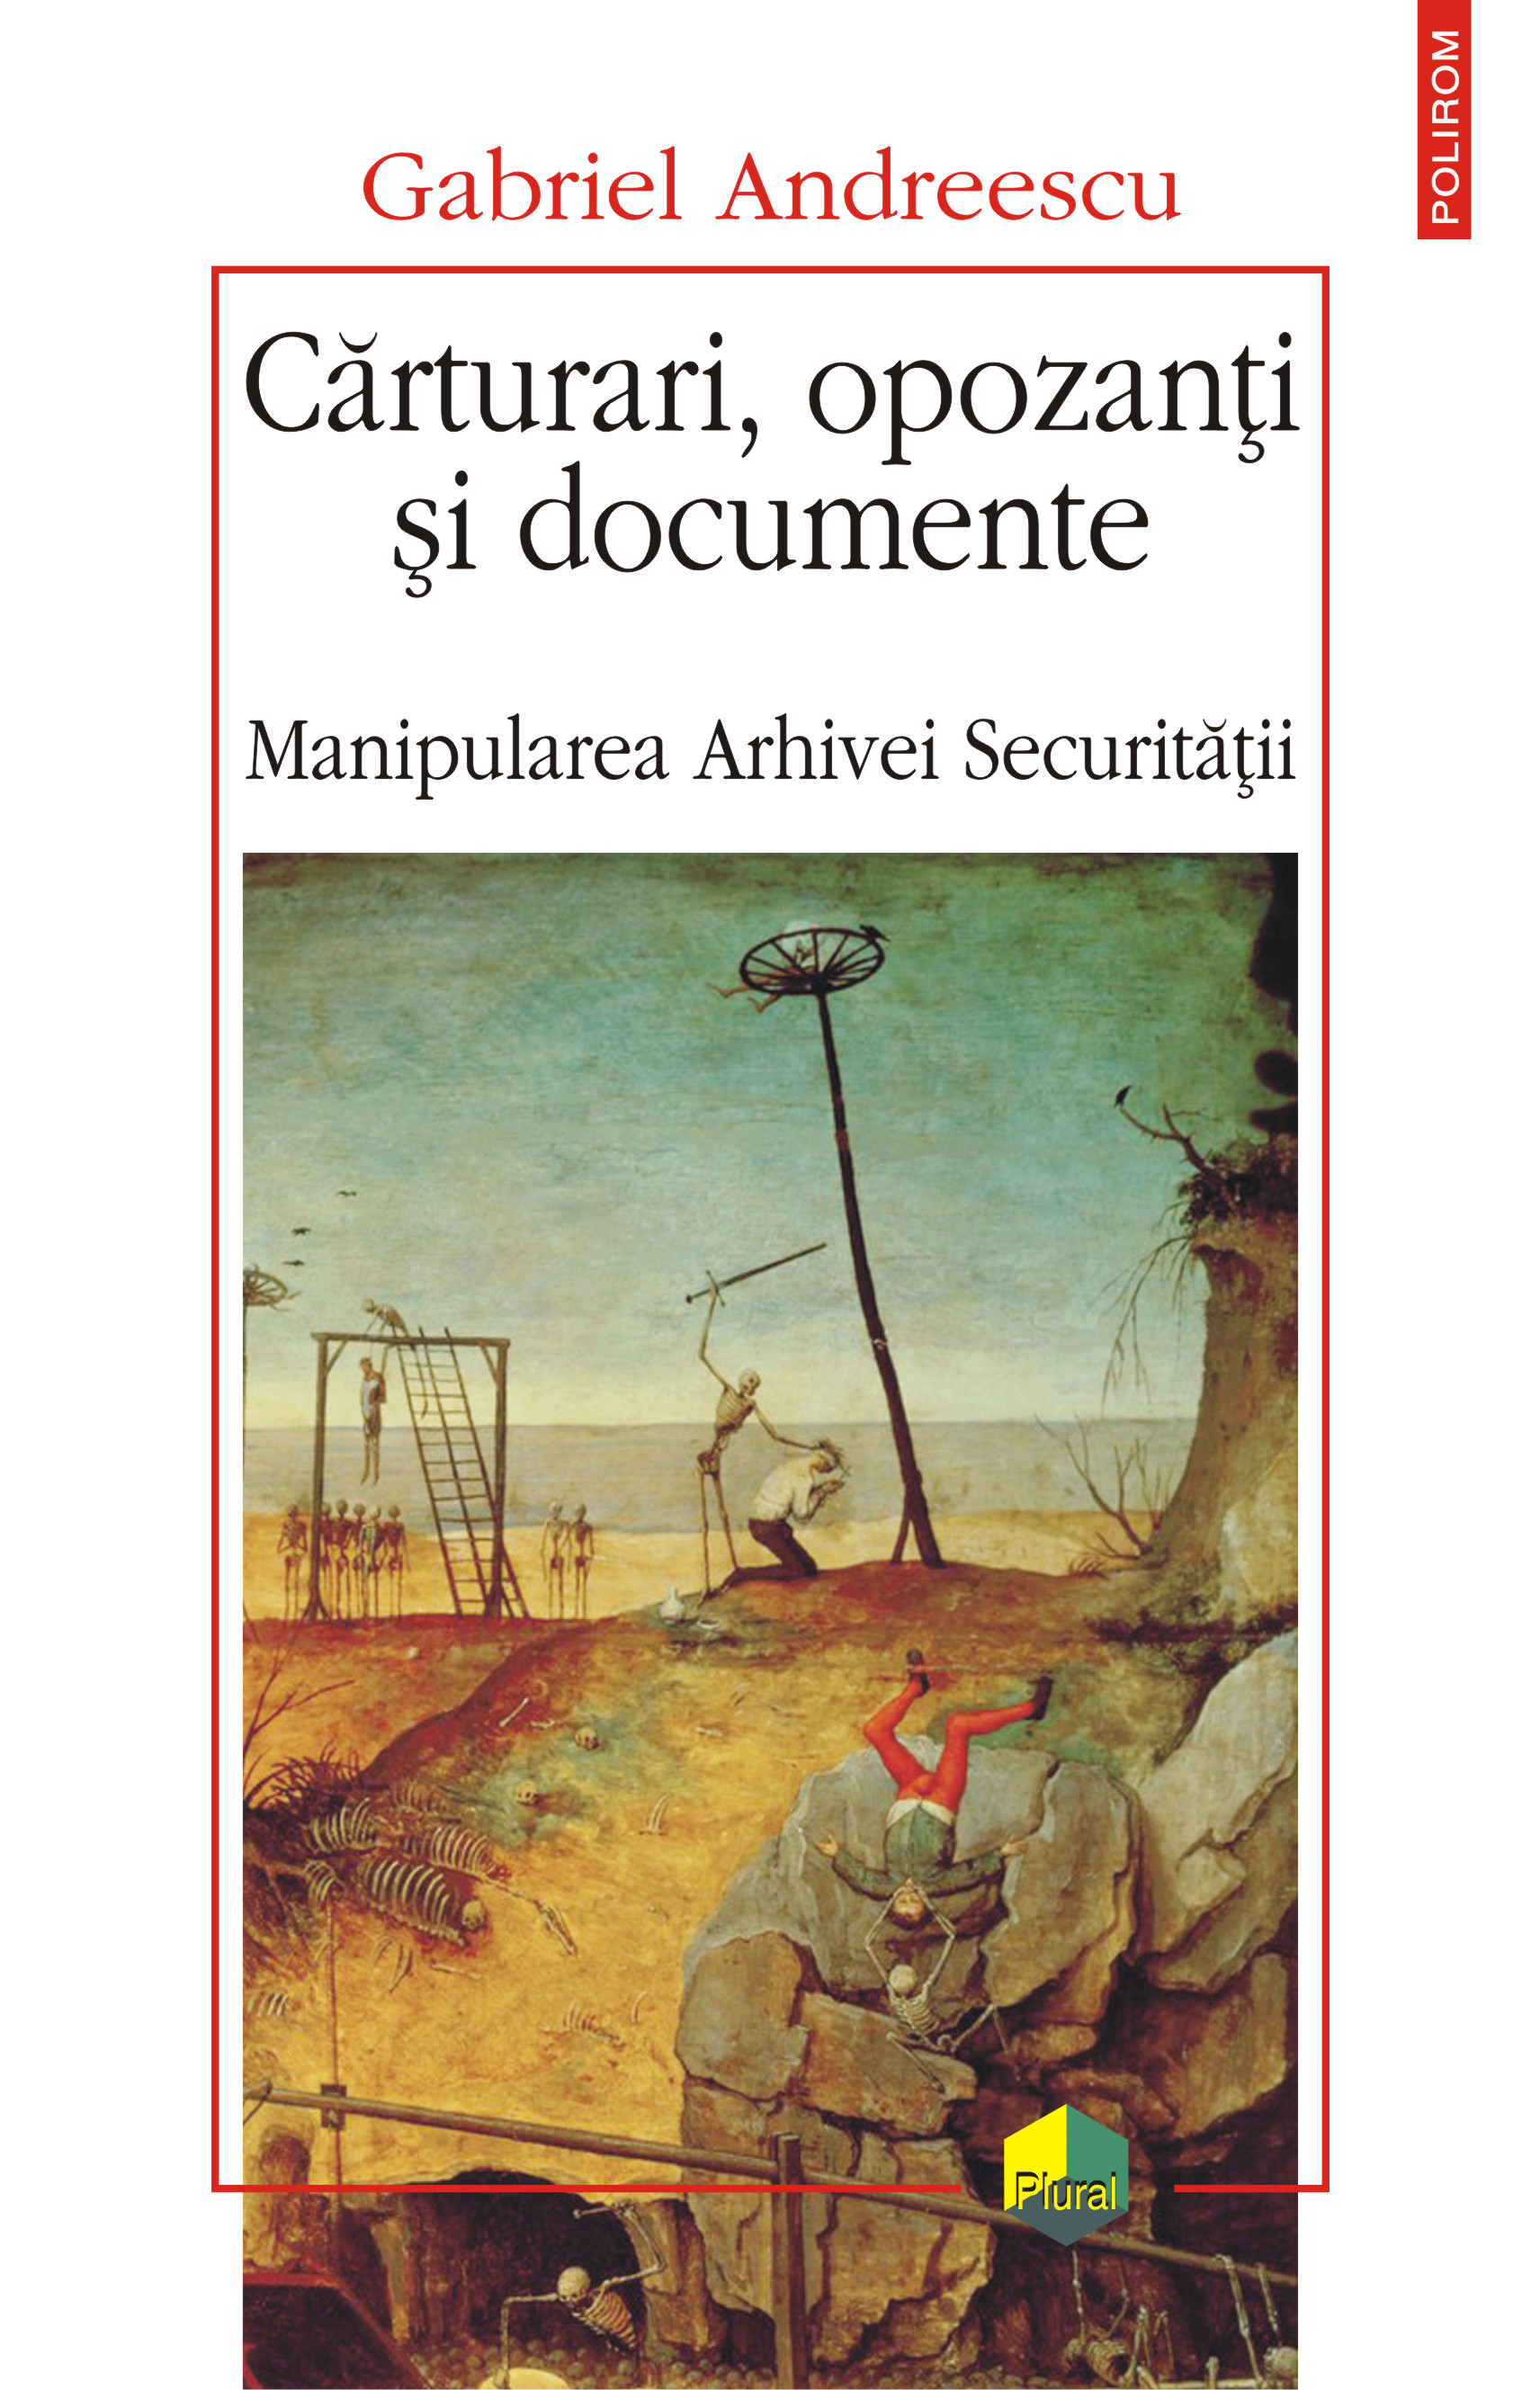 eBook Carturari, opozanti si documente. Manipularea Arhivei Securitatii - Gabriel Andreescu